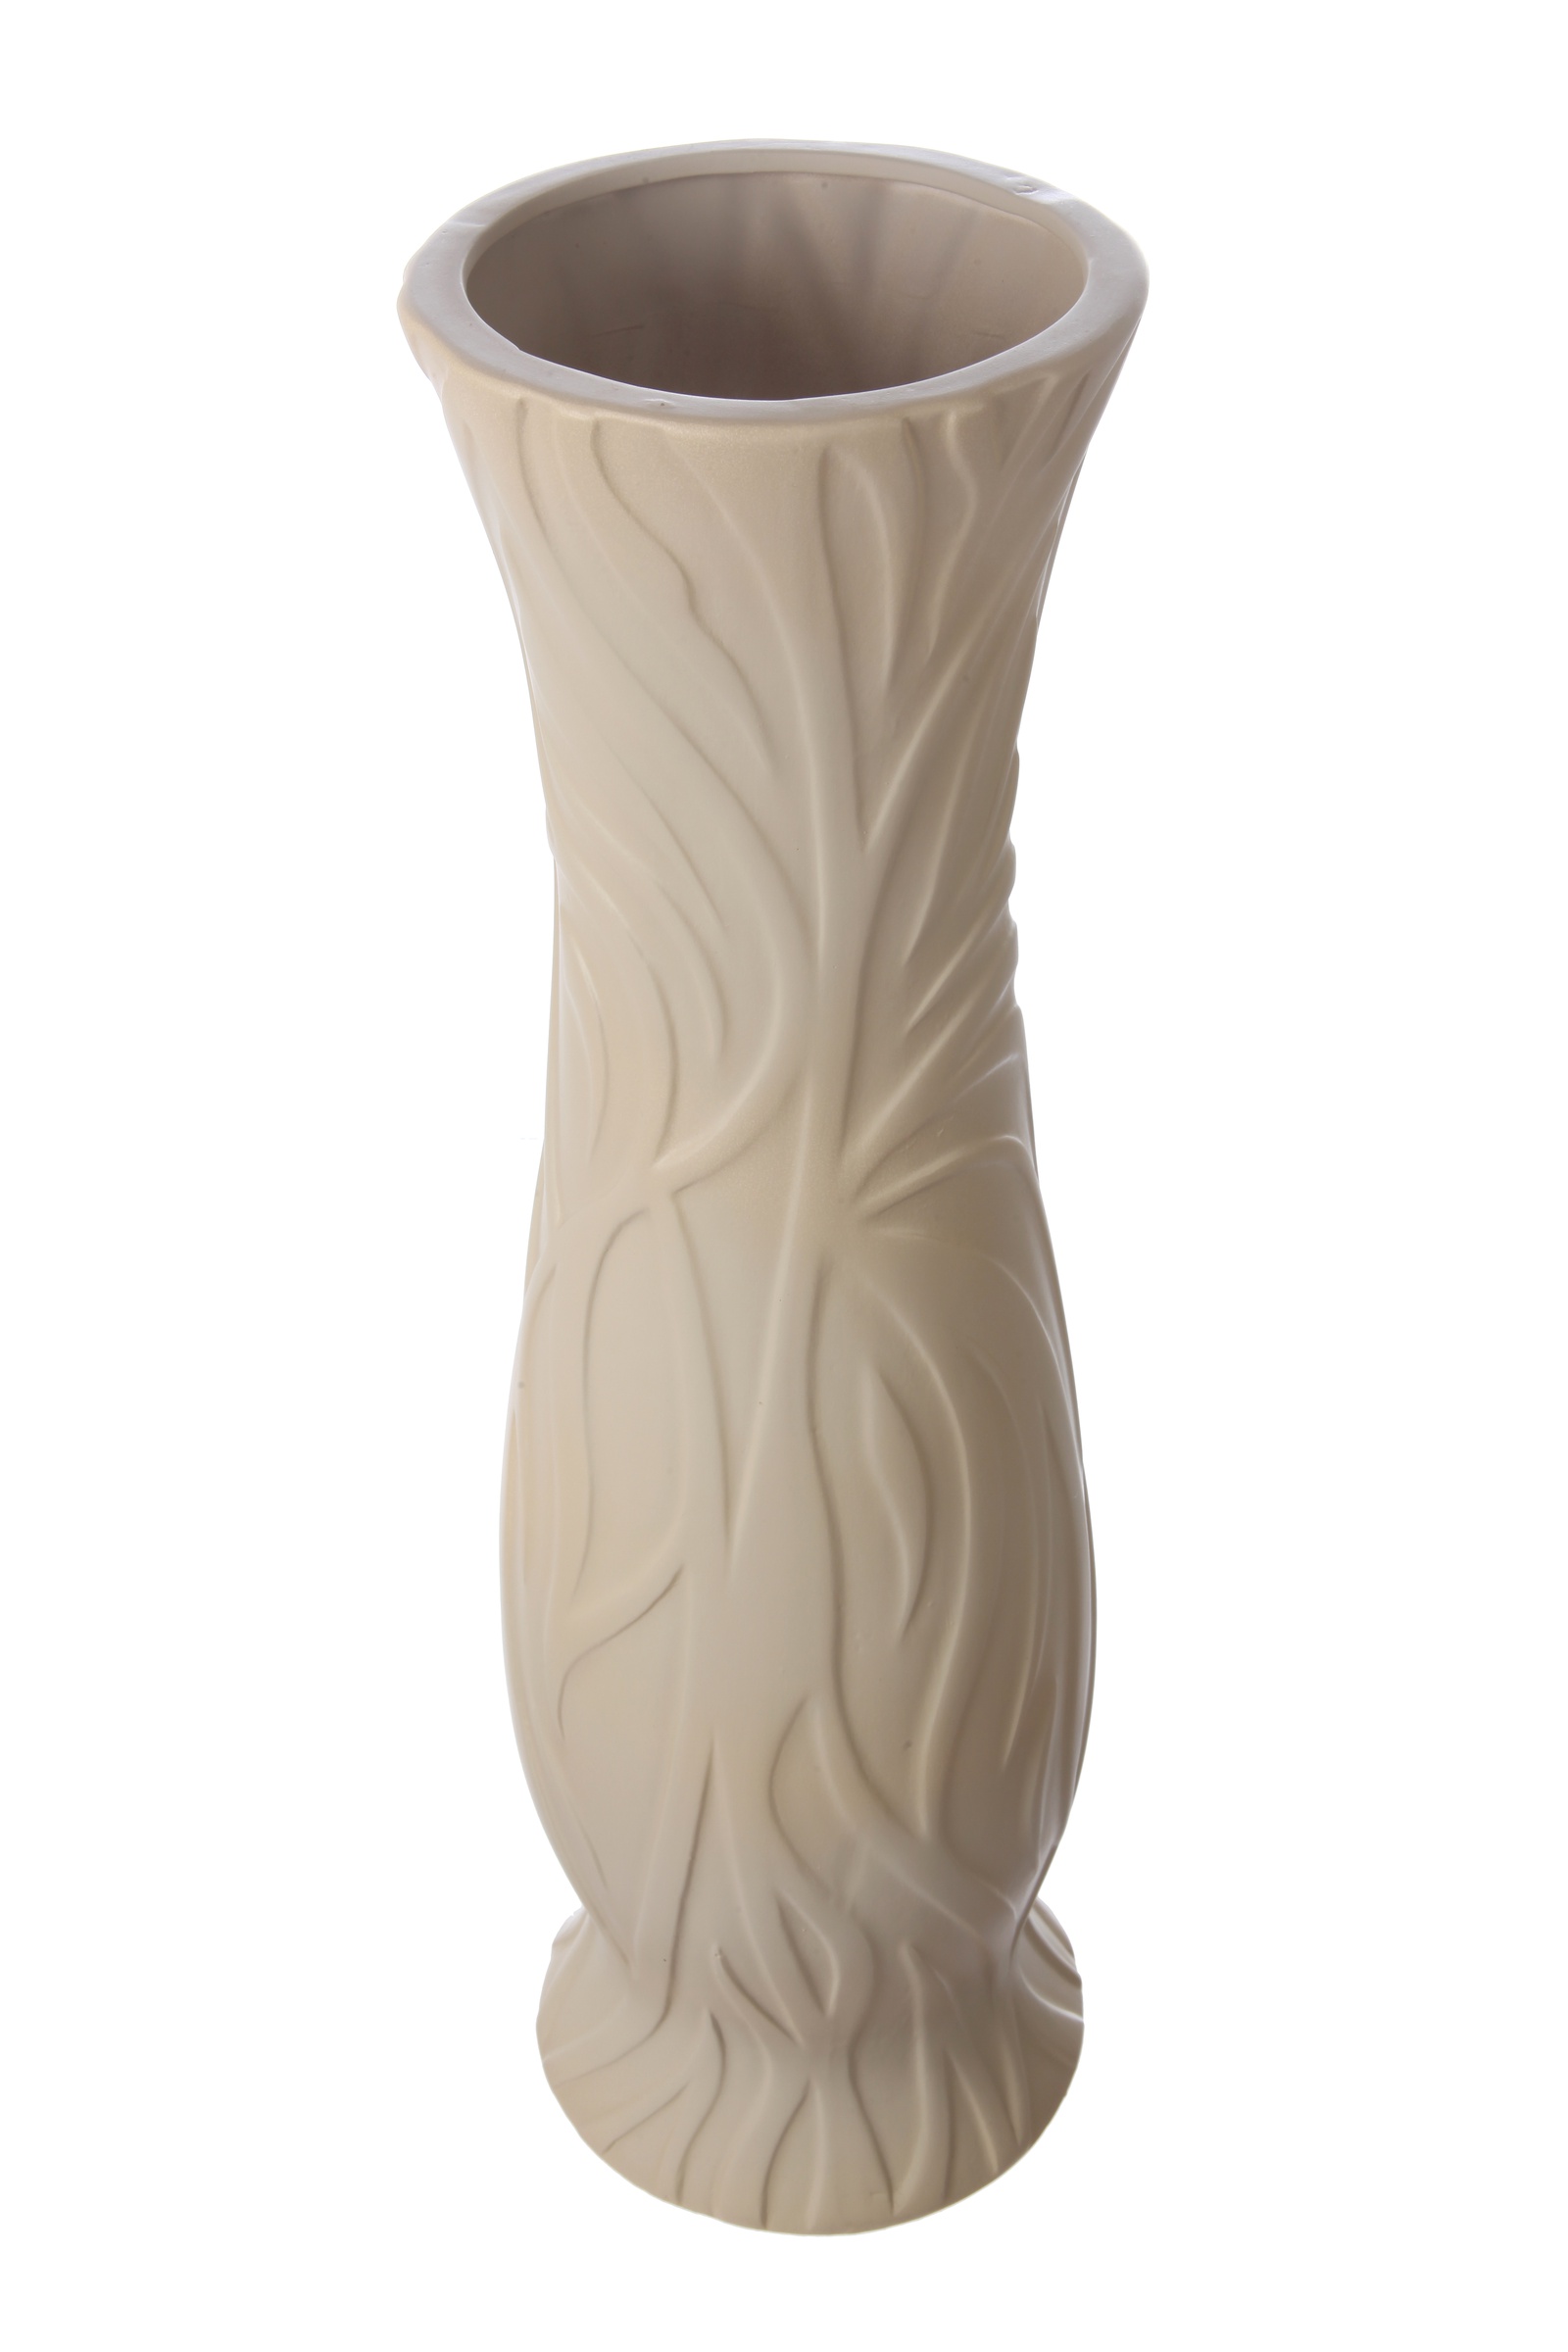 фото Ваза IsmatDecor Керамическая ваза, VB-92 бежевый, бежевый